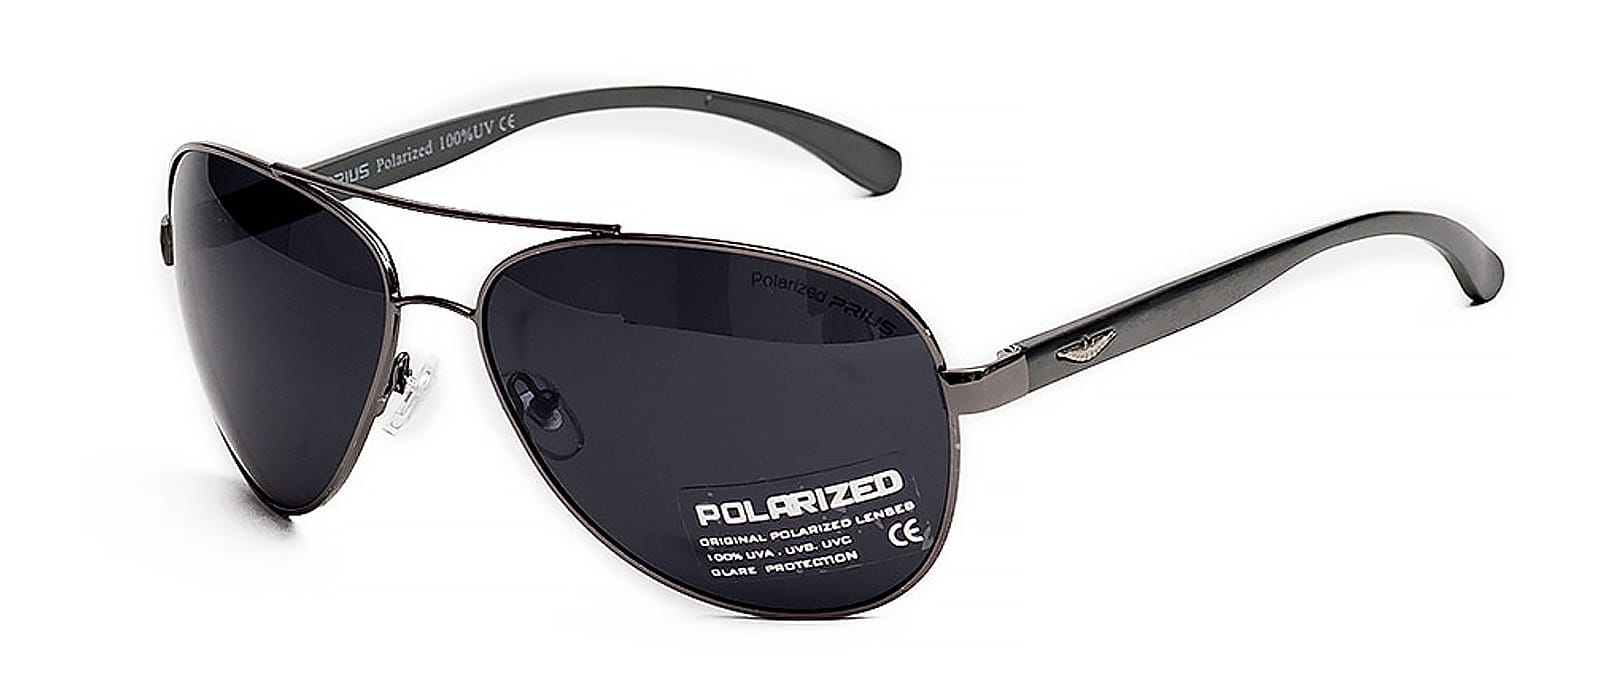 Солнцезащитные очки с указанием маркировки UV защиты на дужке